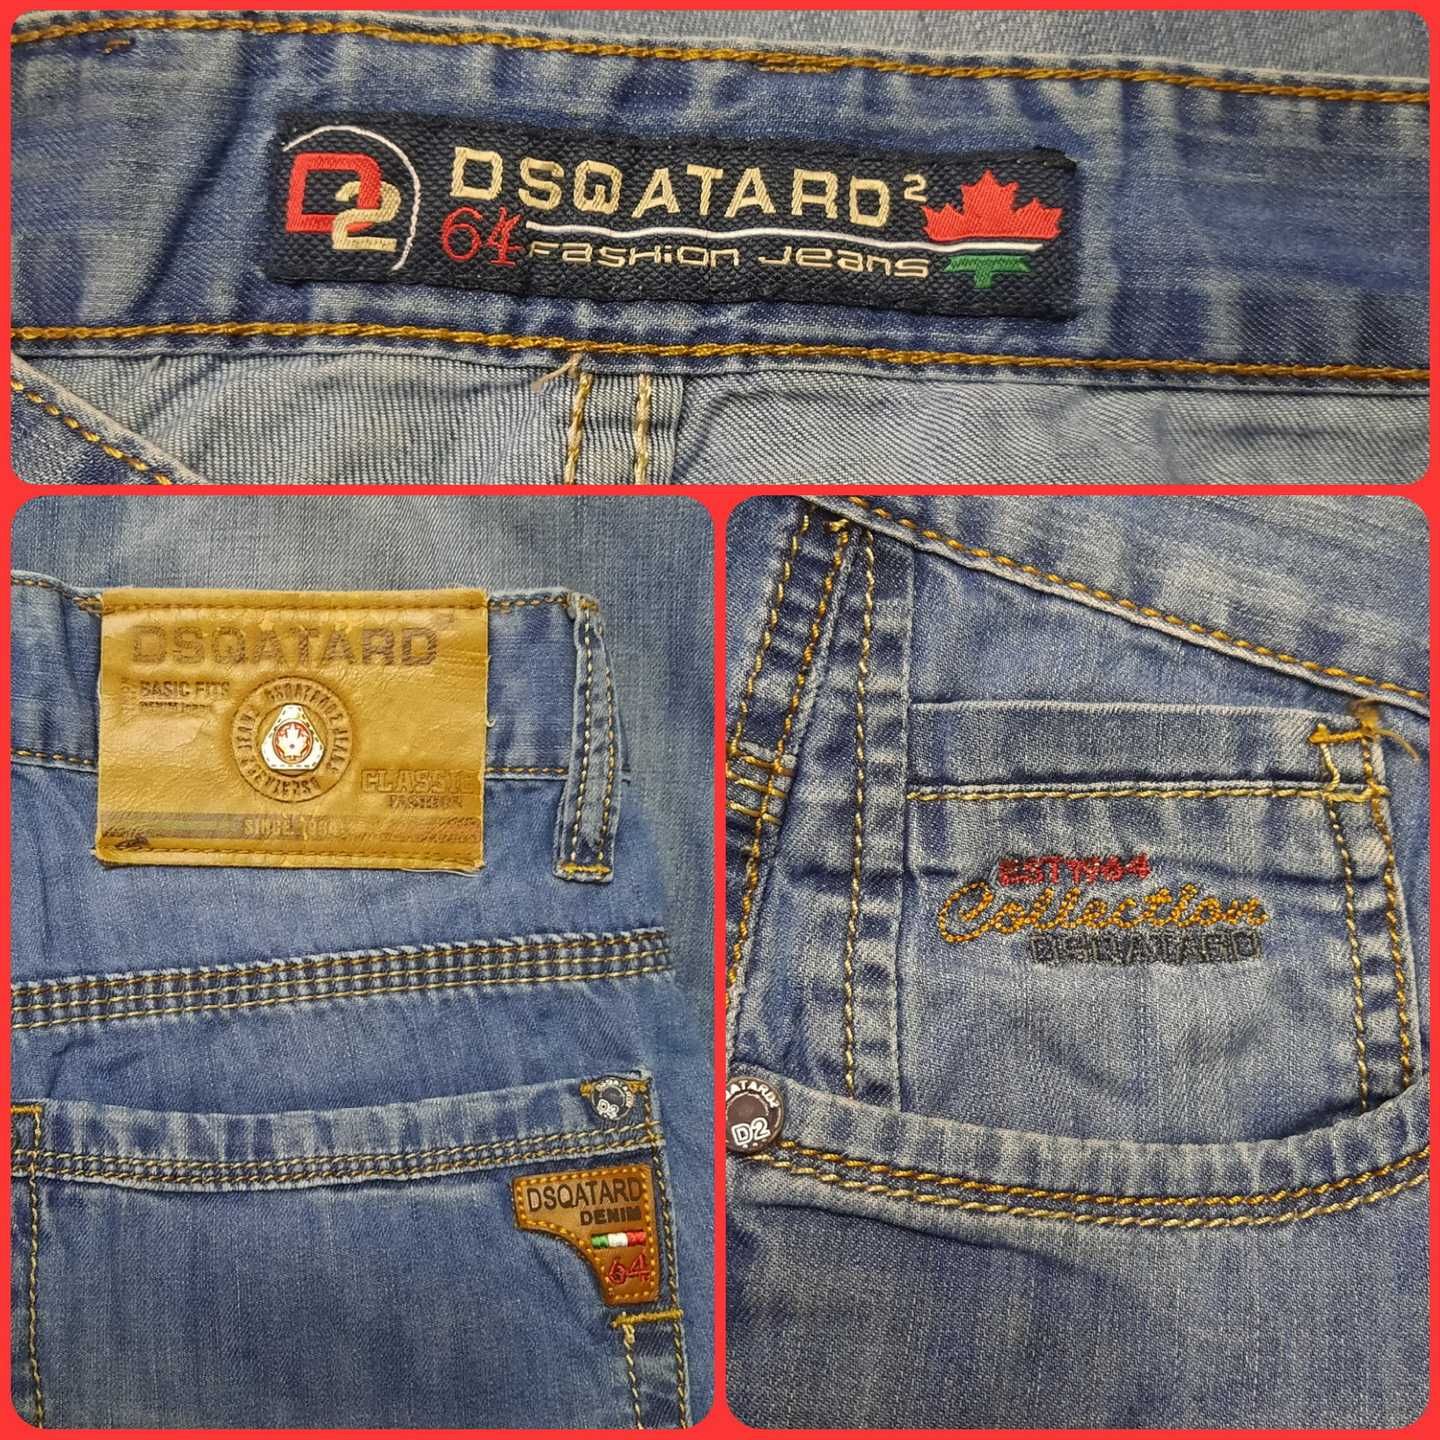 Джинсовые шорты DSQATARD, итальянский бренд